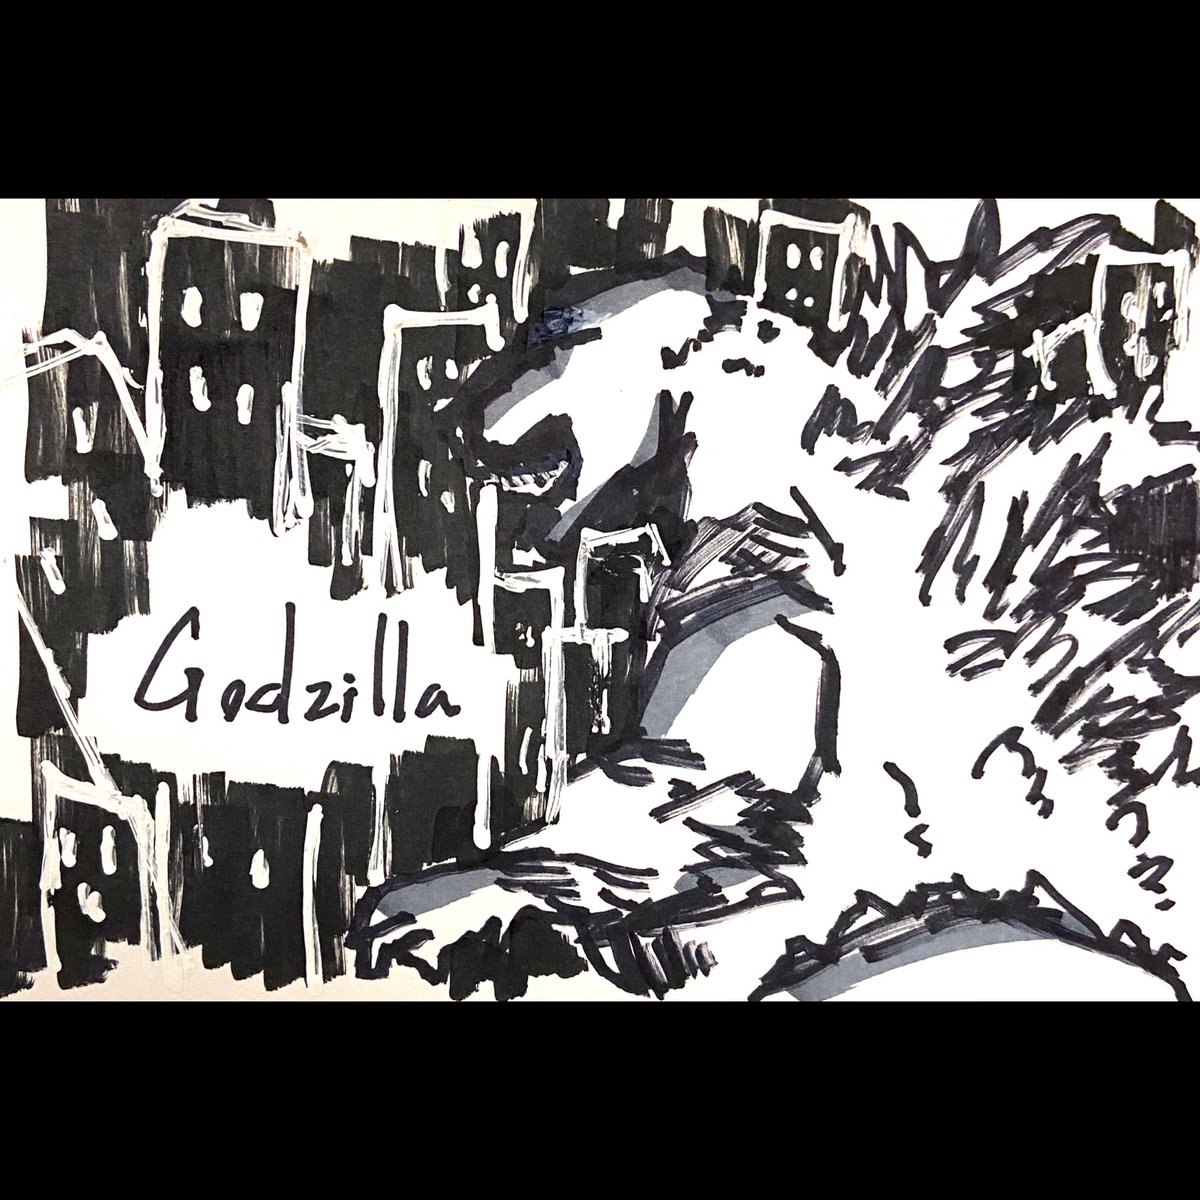 70周年!
黒マーカーでぶわっと描きました。
#ゴジラ #Godzilla #GodzillaDay 